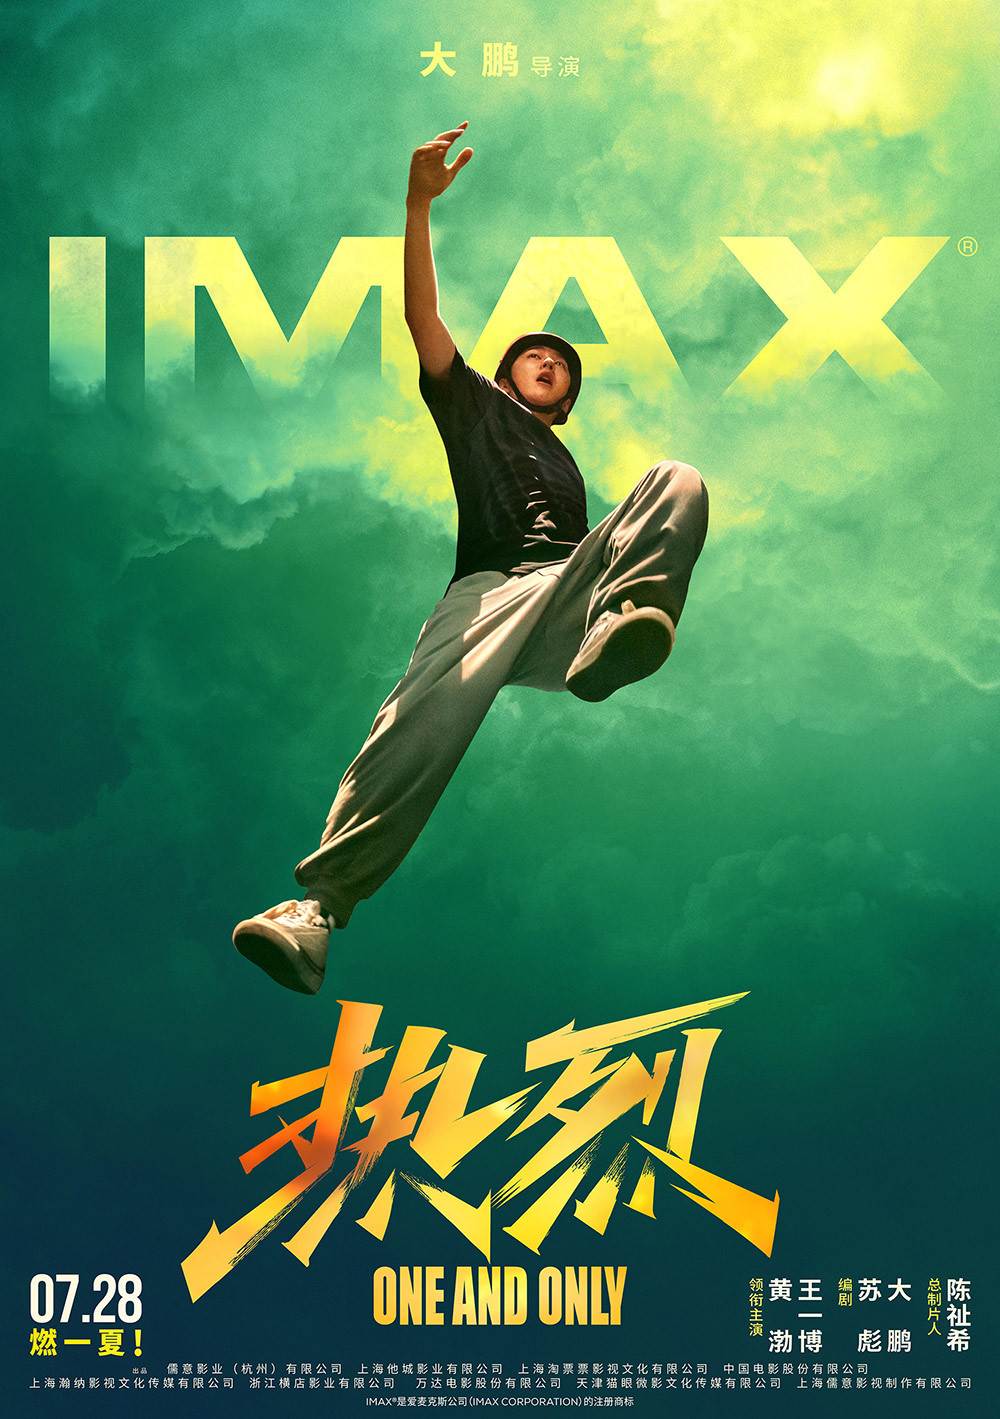 【影視動漫】IMAX在京舉辦《熱烈》觀影 20分鐘大賽場面必看IMAX-第0張